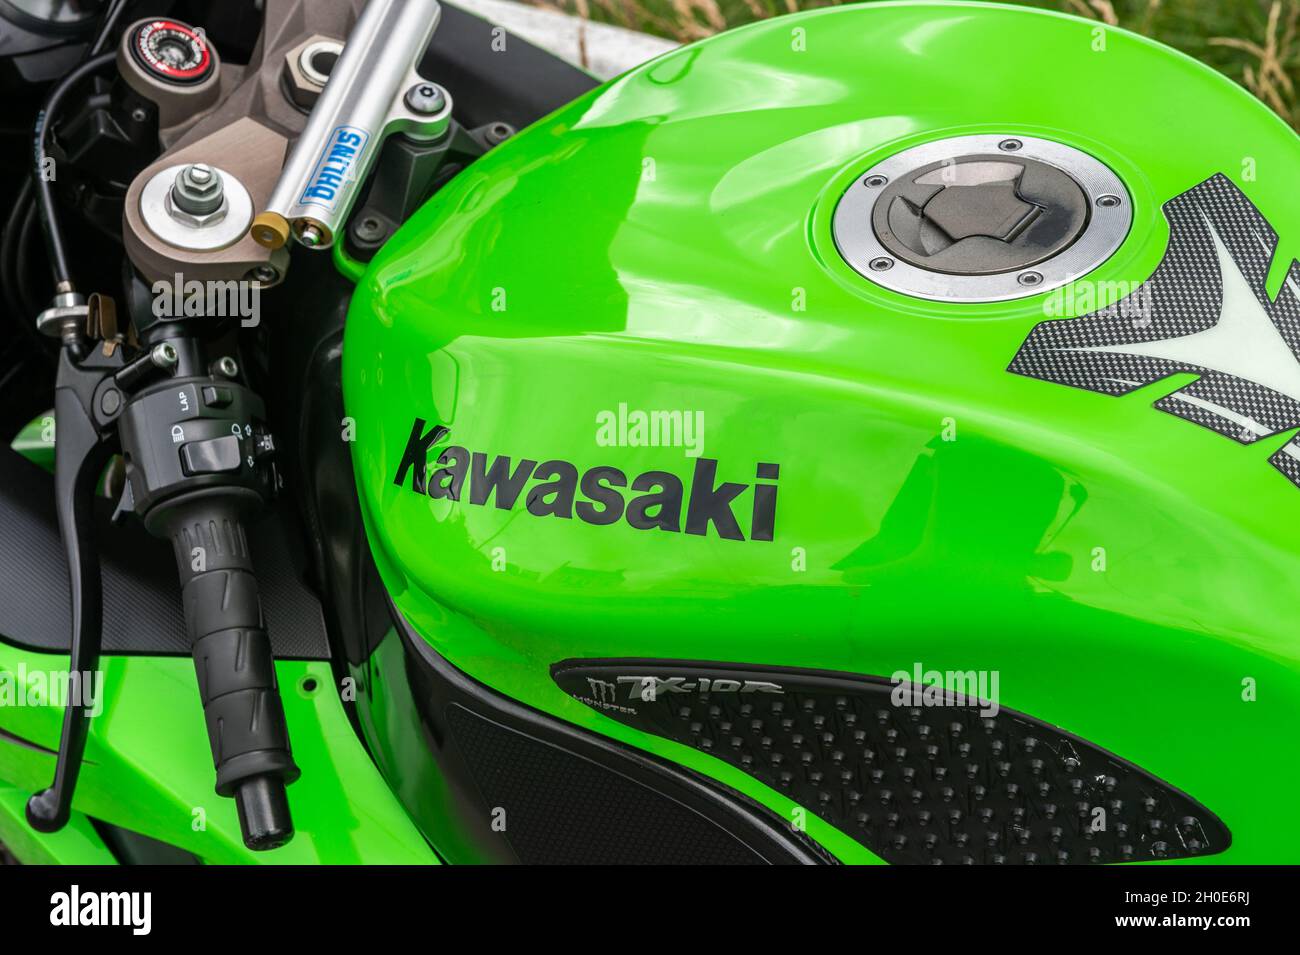 kawasaki ninja green